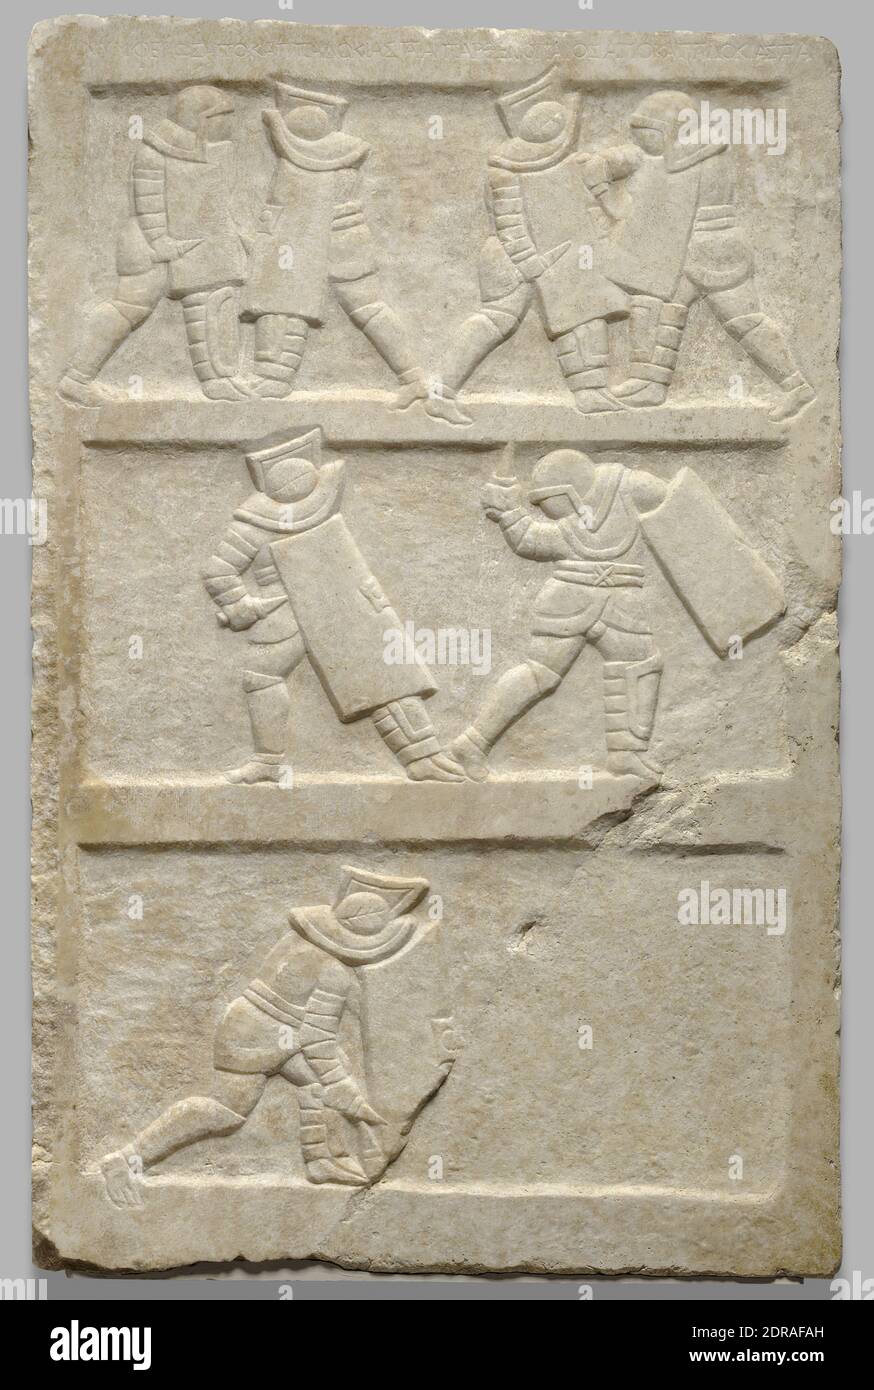 Relief mit Gladiatoren, ca. 2. Jahrhundert n. Chr., Marmor, 122.6 × 80.2 × 6.2 cm (48 1/4 × 31 9/16 × 2 7/16 in.), Gladiatorenspiele entstanden als Begräbtsriten, in denen der Verstorbene durch körperliche Wettbewerbe gefeiert wurde. Aus diesem Grund wurden Reliefdarstellungen von Gladiatorenkämpfen manchmal als Grabzeichen verwendet – wahrscheinlich nicht für Gladiatoren selbst, sondern für diejenigen, deren Leben solche Spiele vielleicht erinnert haben. Die Spiele waren besonders beliebt während des Römischen Reiches; in der Tat, die meisten der bekannten Grabdarstellungen von Gladiatoren sind Imperial in Datum. Stockfoto